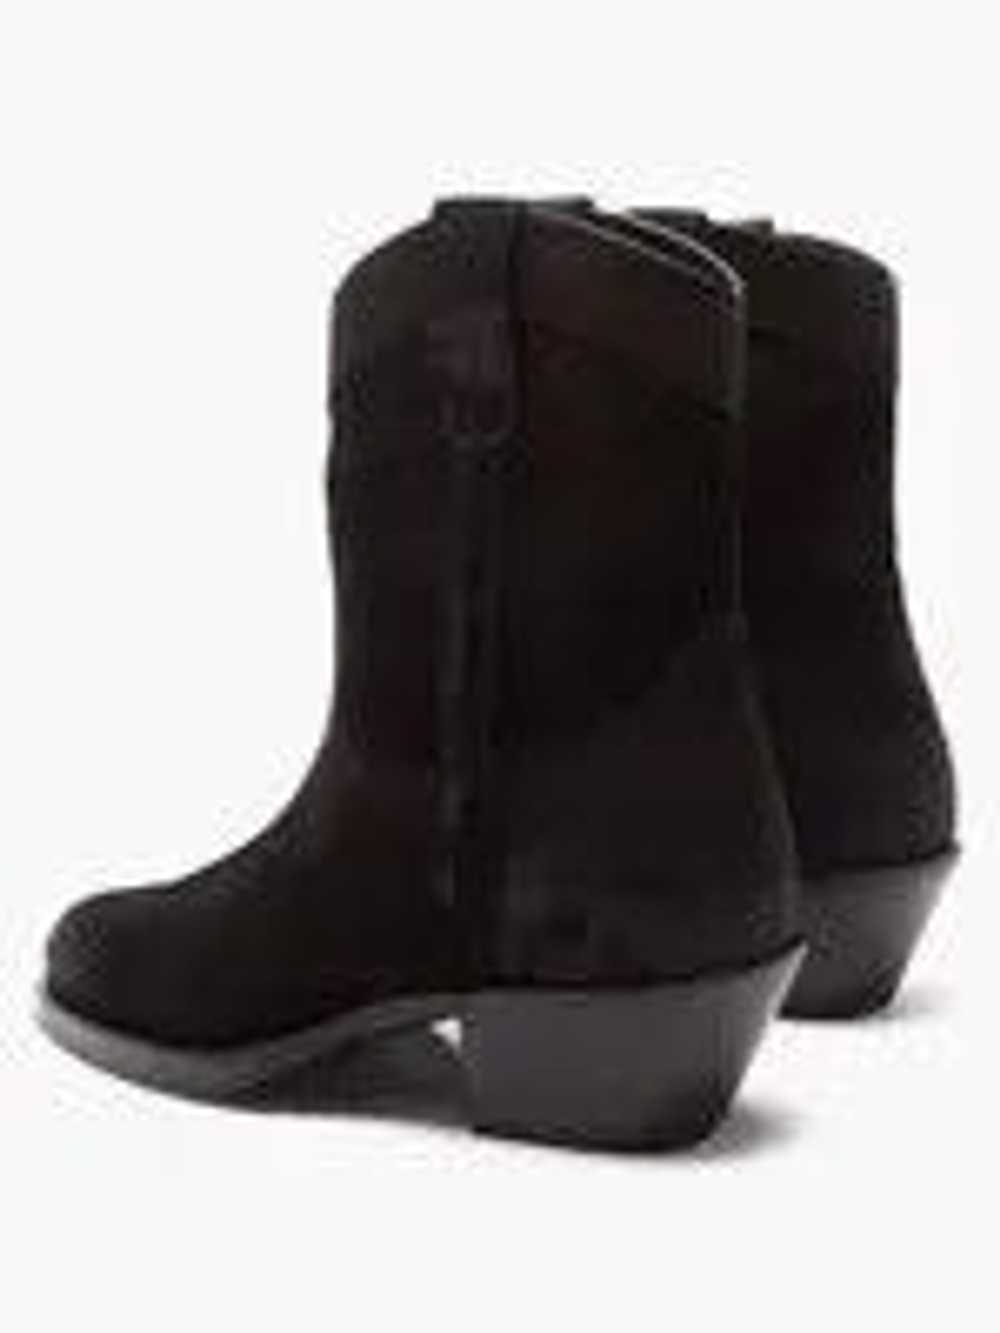 Saint Laurent Paris o1w1db10623 Boots in Black - image 3